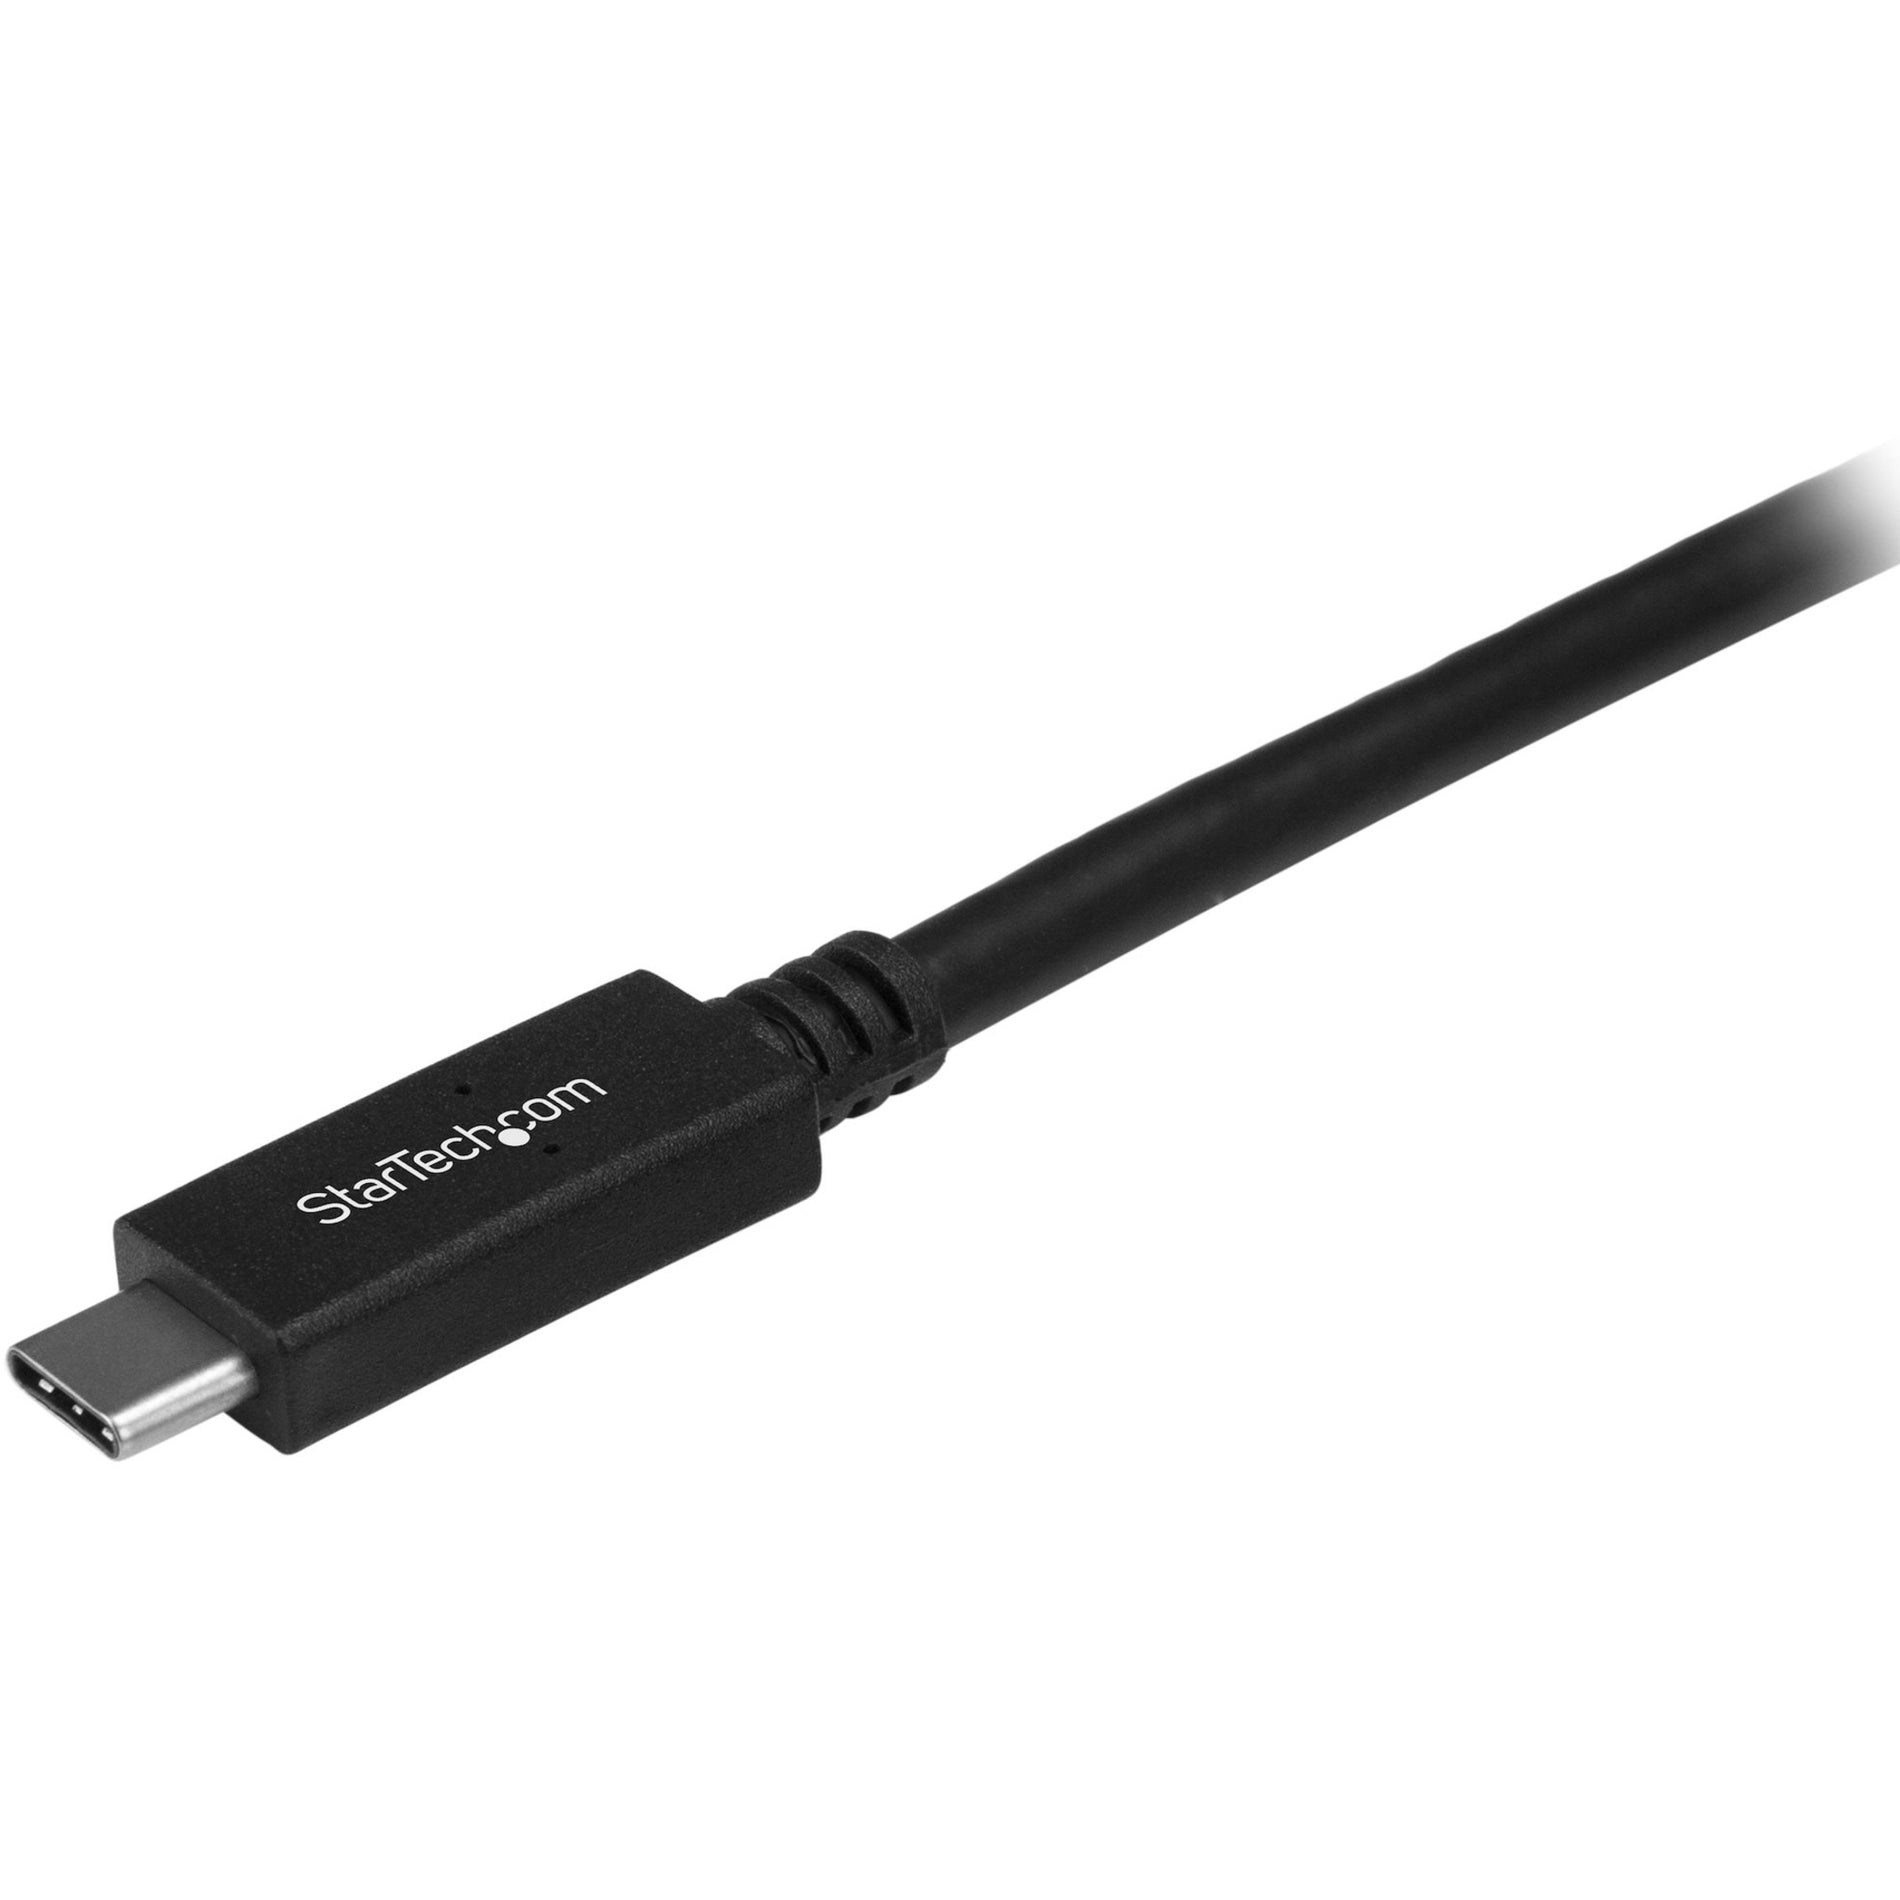 StarTech.com USB31CC1M 1m (3ft) USB-C Cable, USB Type-C USB 3.1 Gen 2 10Gbps Cable